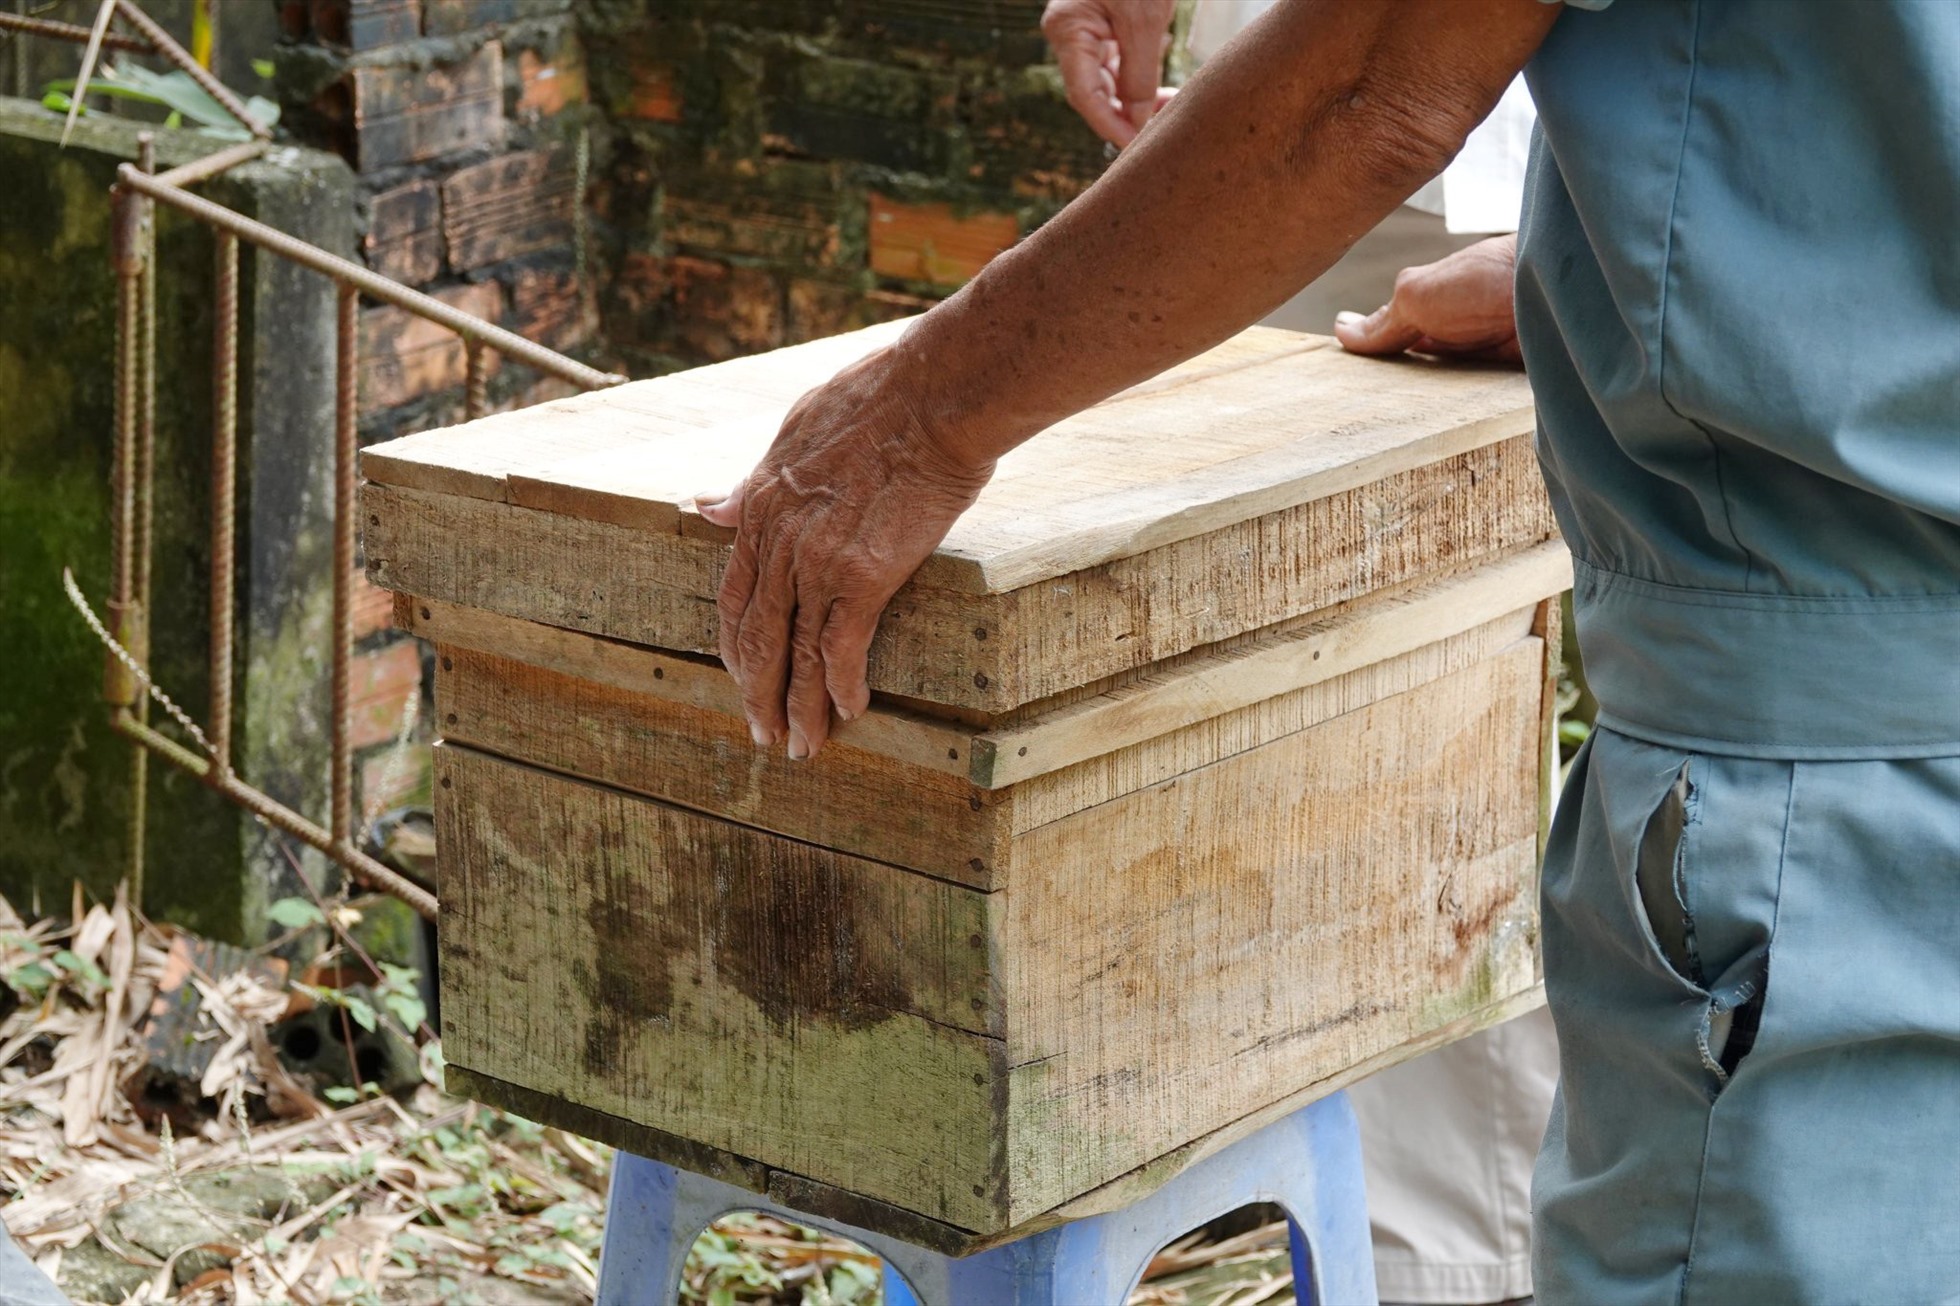  Chuẩn bị thùng nuôi ong